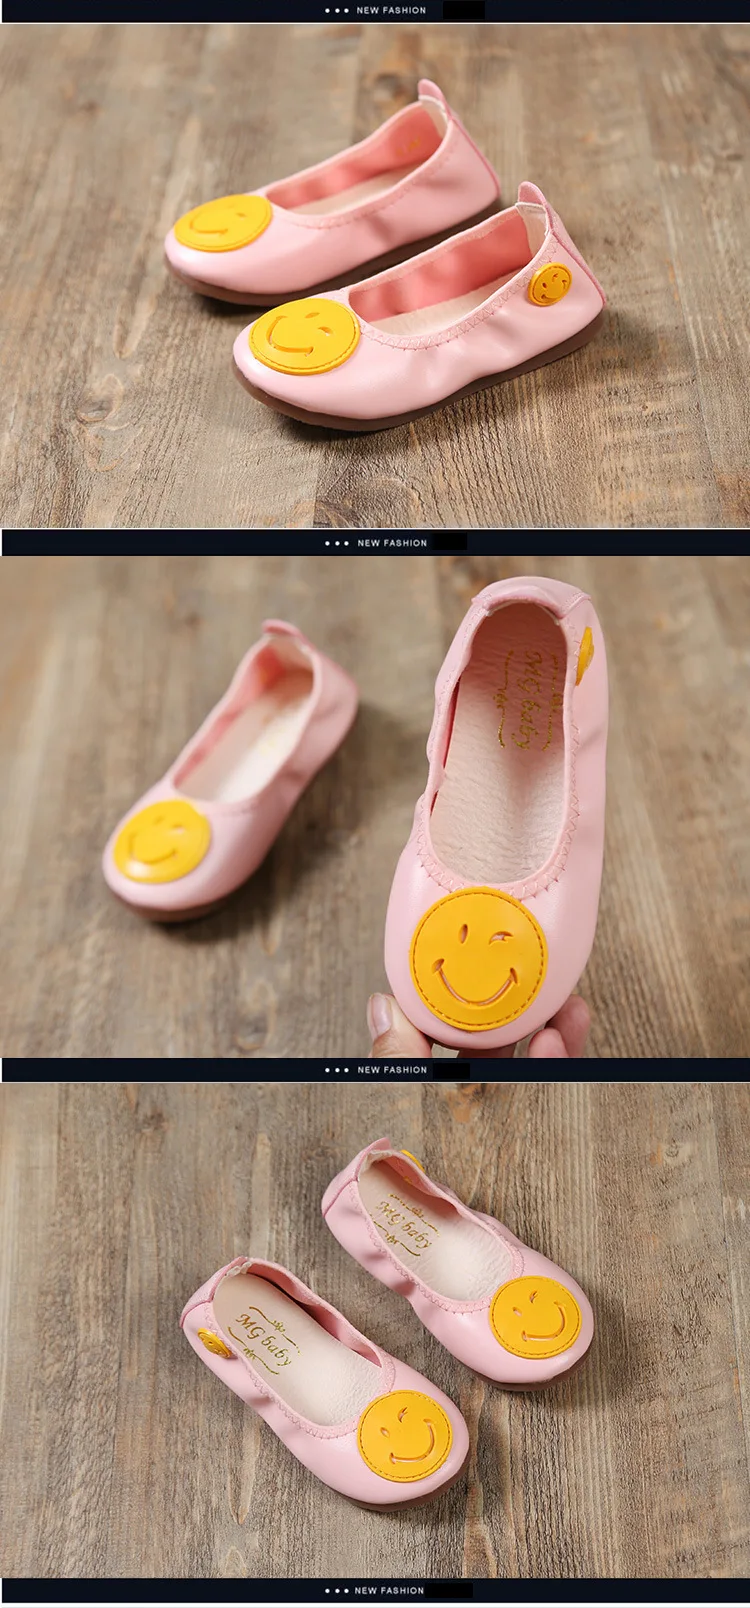 Cnfsnj Новинка 2017 милый мелкой рот детская обувь без каблука одной педали для отдыха детская обувь маленьких детей балетки